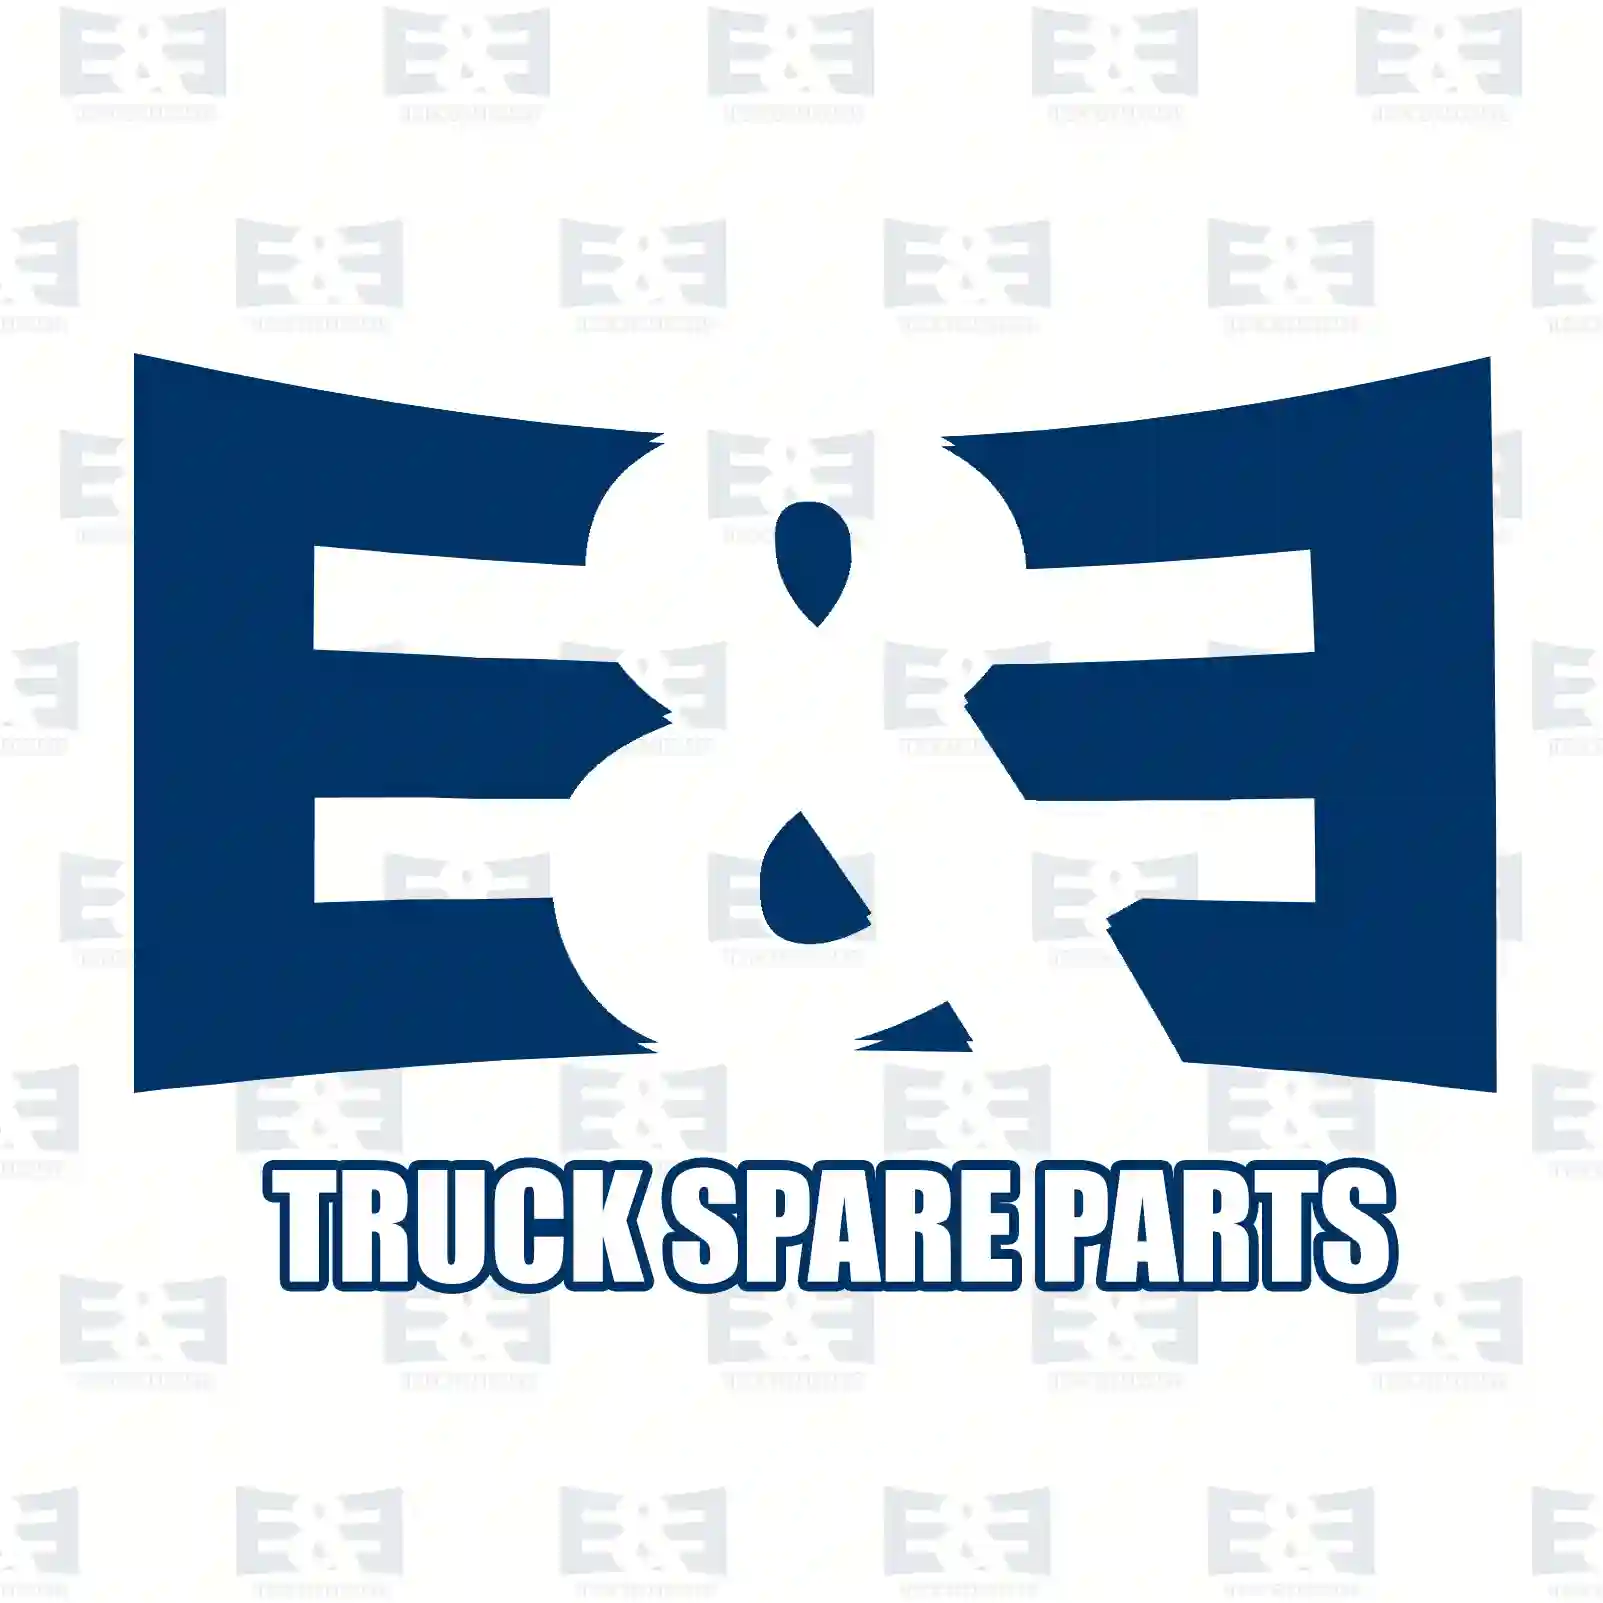 Axle modulator, 2E2270743, 1506654, 2349975, 349975, 3499750, 505816896, 5816896, 58168960, 10167581, N2509990144, AIF1166, 5021170240, 1738466, 1788953, 1802089, 579275 ||  2E2270743 E&E Truck Spare Parts | Truck Spare Parts, Auotomotive Spare Parts Axle modulator, 2E2270743, 1506654, 2349975, 349975, 3499750, 505816896, 5816896, 58168960, 10167581, N2509990144, AIF1166, 5021170240, 1738466, 1788953, 1802089, 579275 ||  2E2270743 E&E Truck Spare Parts | Truck Spare Parts, Auotomotive Spare Parts